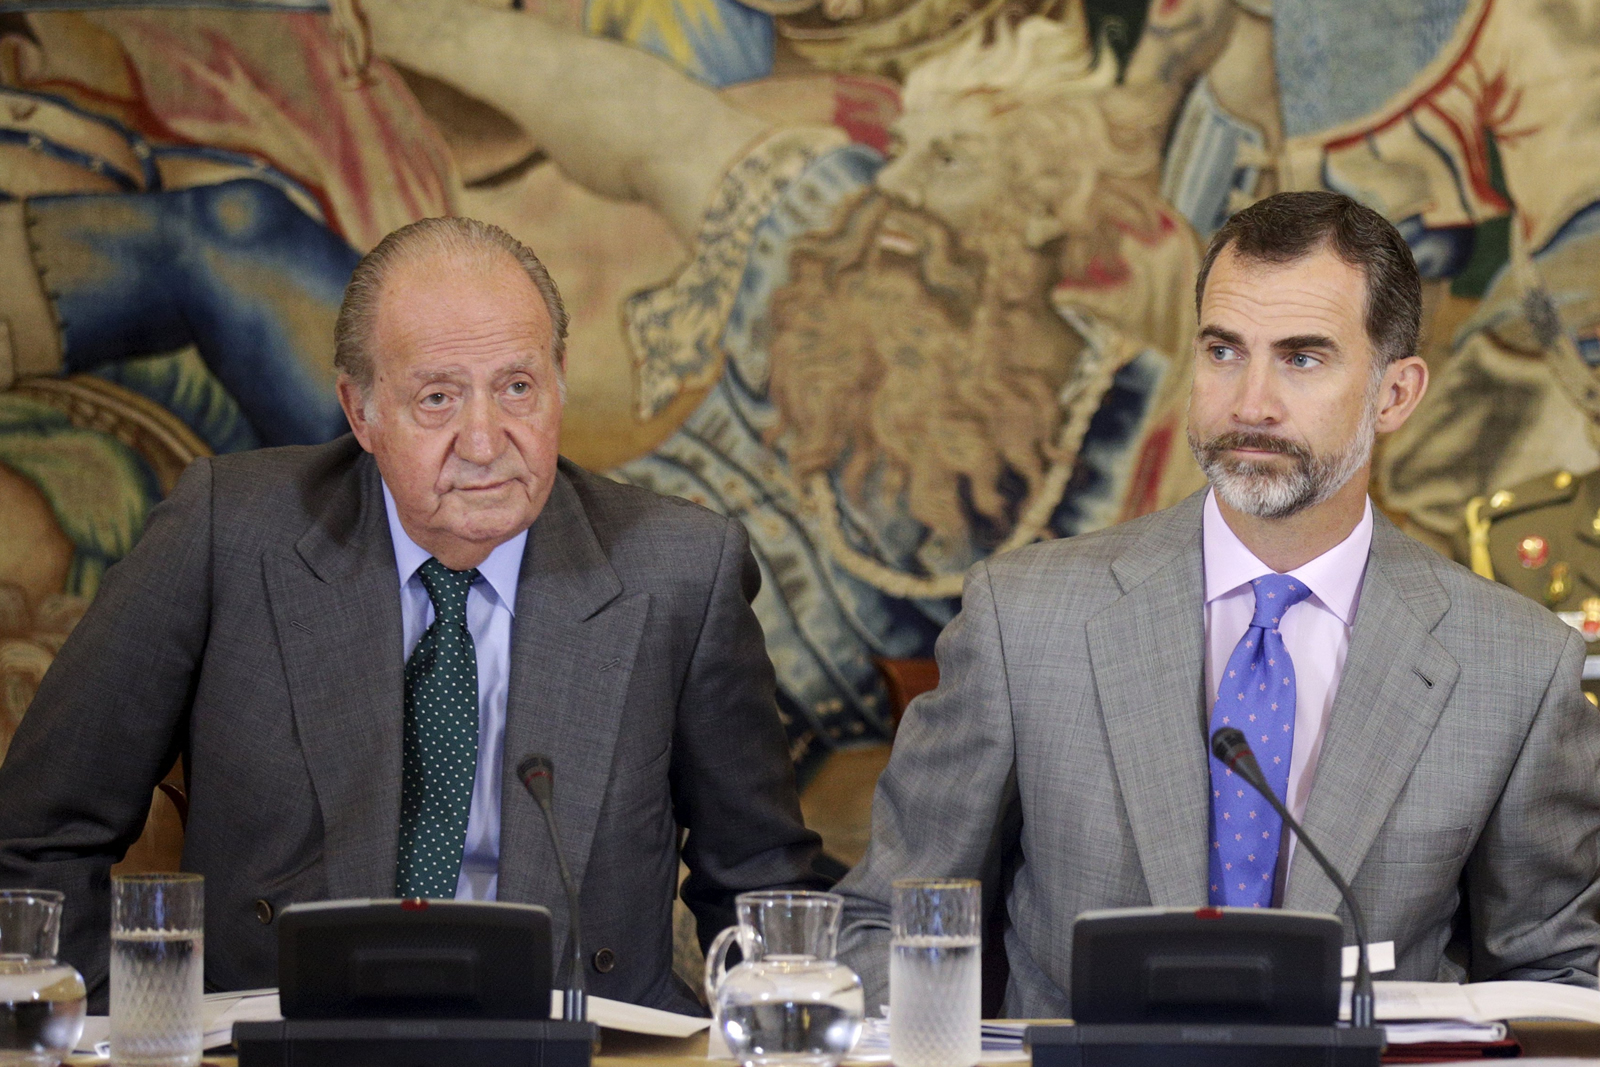 Una agenda de emergencia para escenificar la unidad de la Familia Real Española